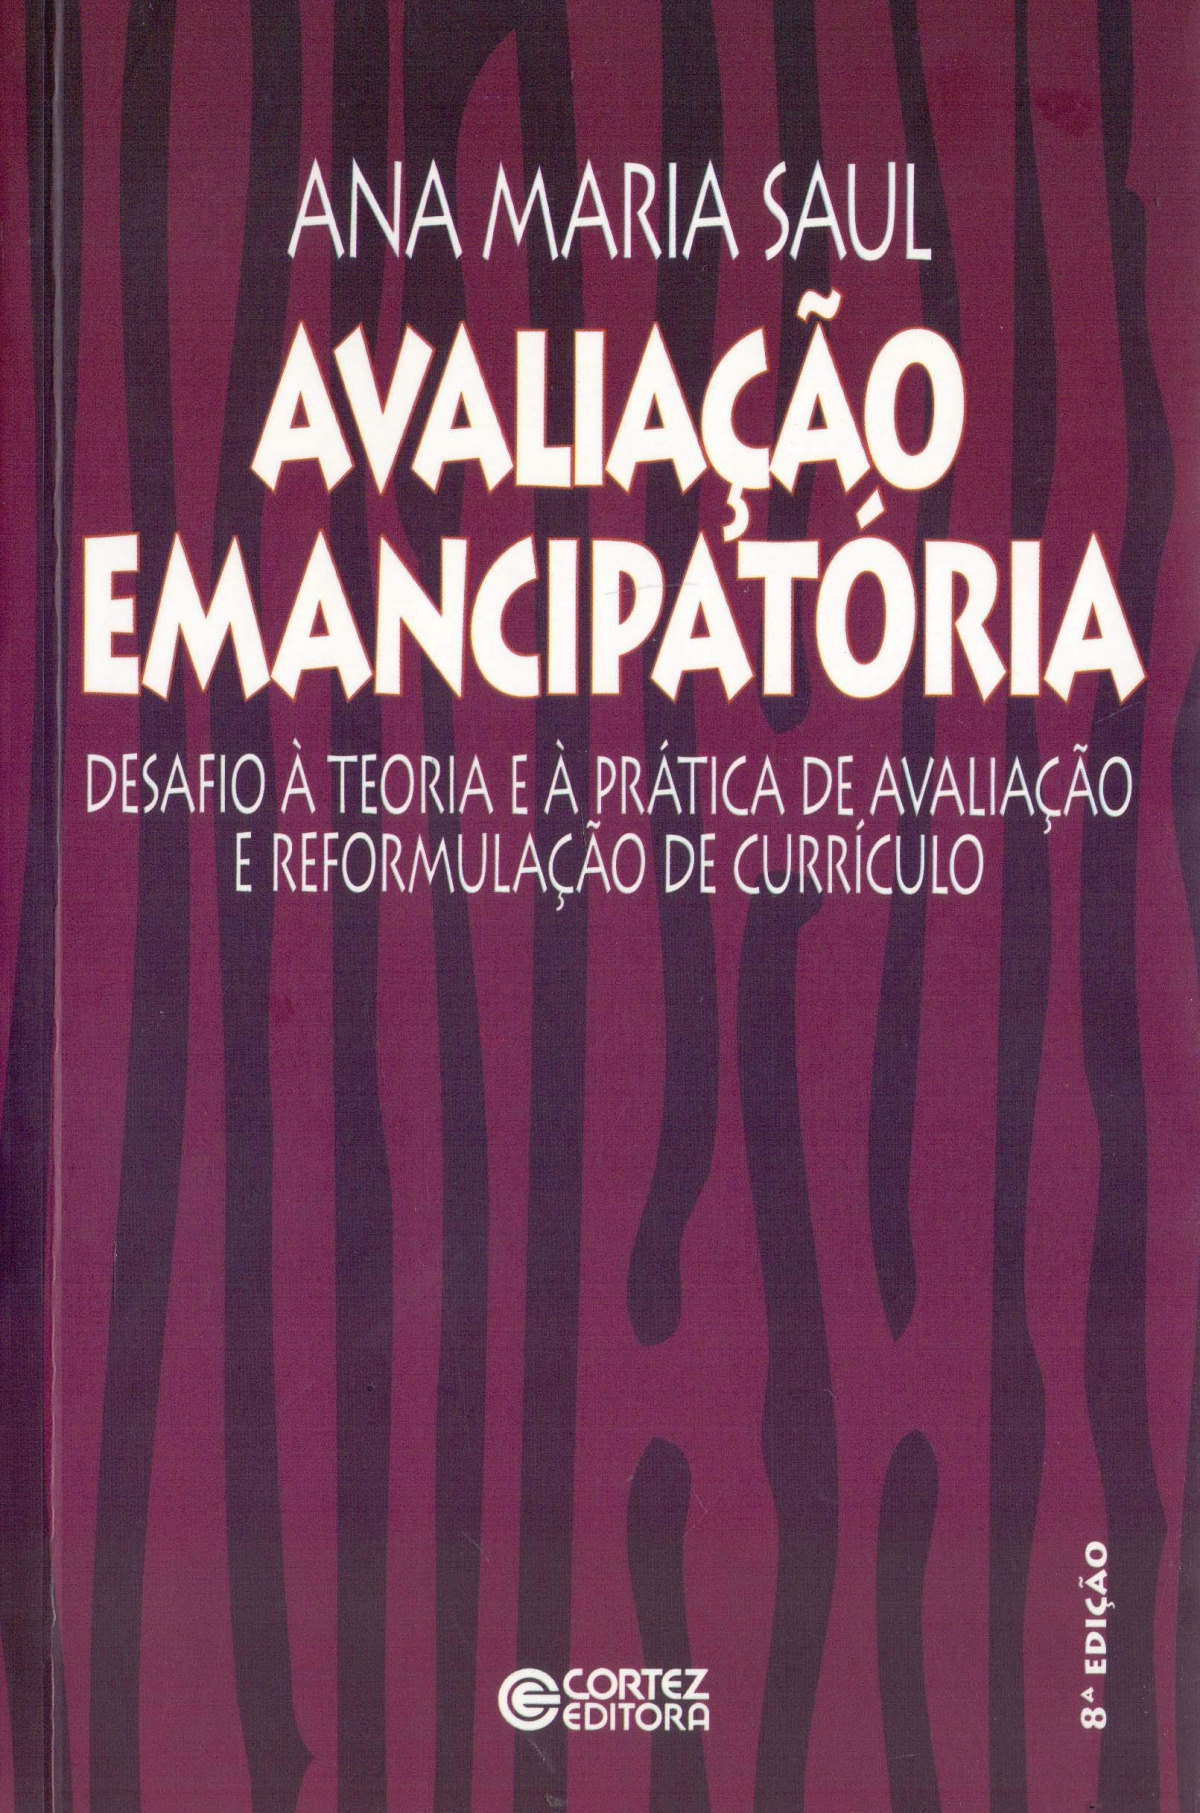 Avaliação emancipatória - Ana Maria Saul